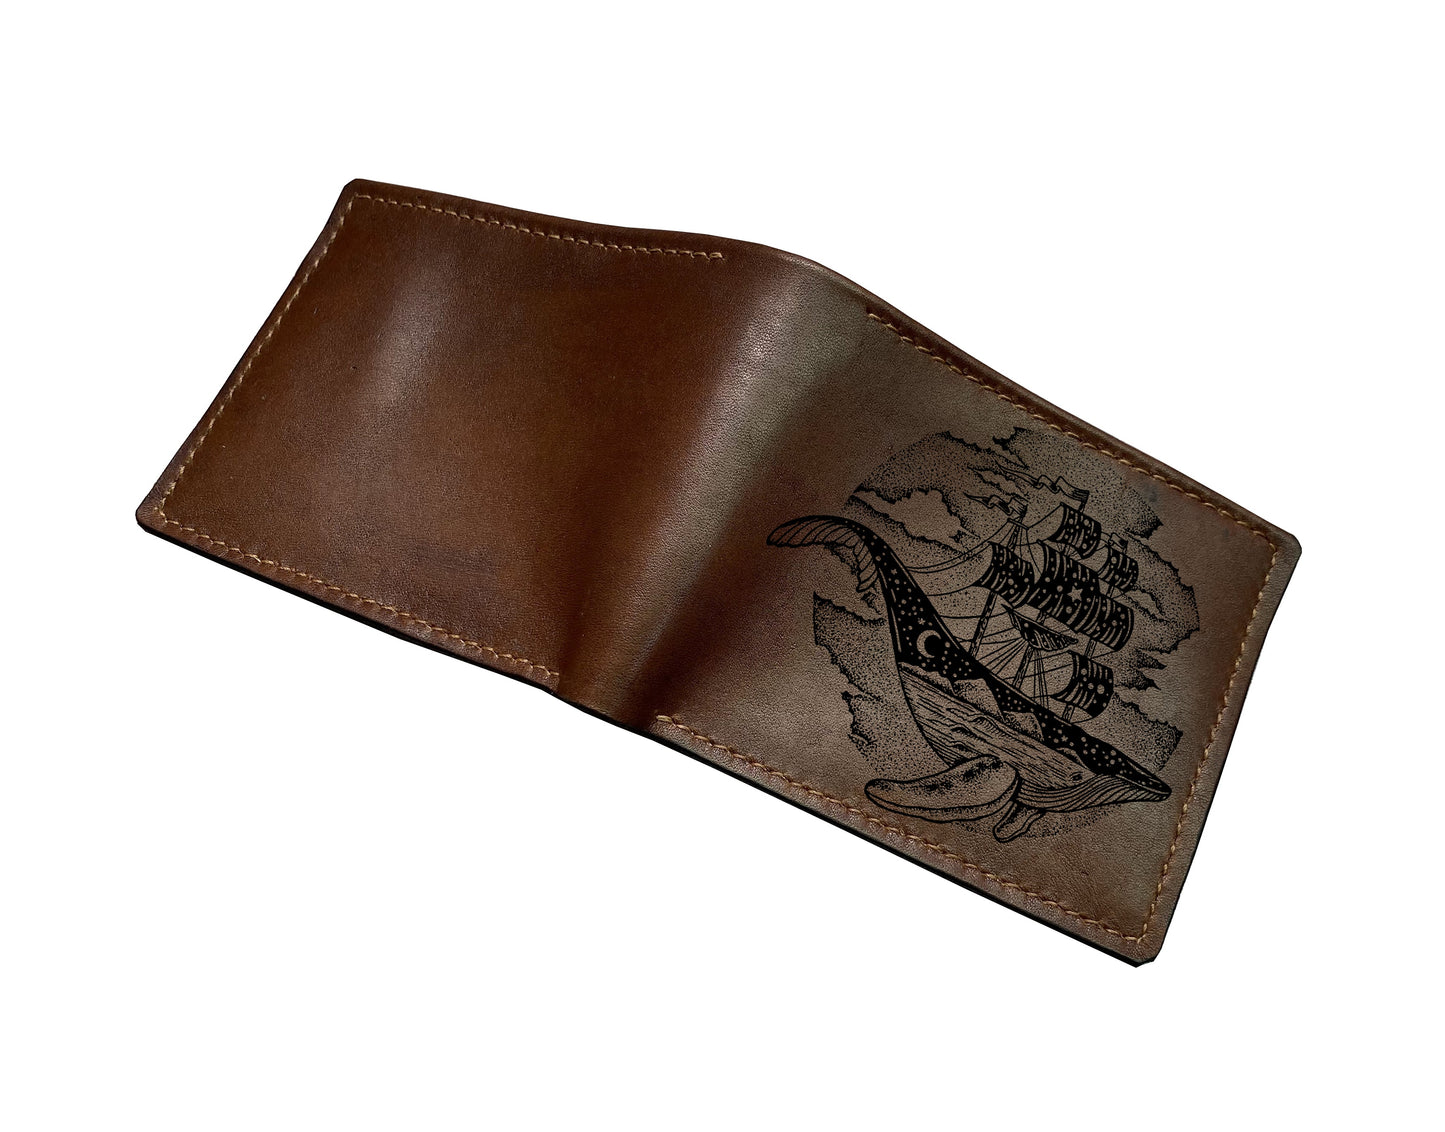 Mayan Corner - Purple leather wallet, whale drawing art wallet, ocean pattern gift, bifold long wallet, animal pattern wallet